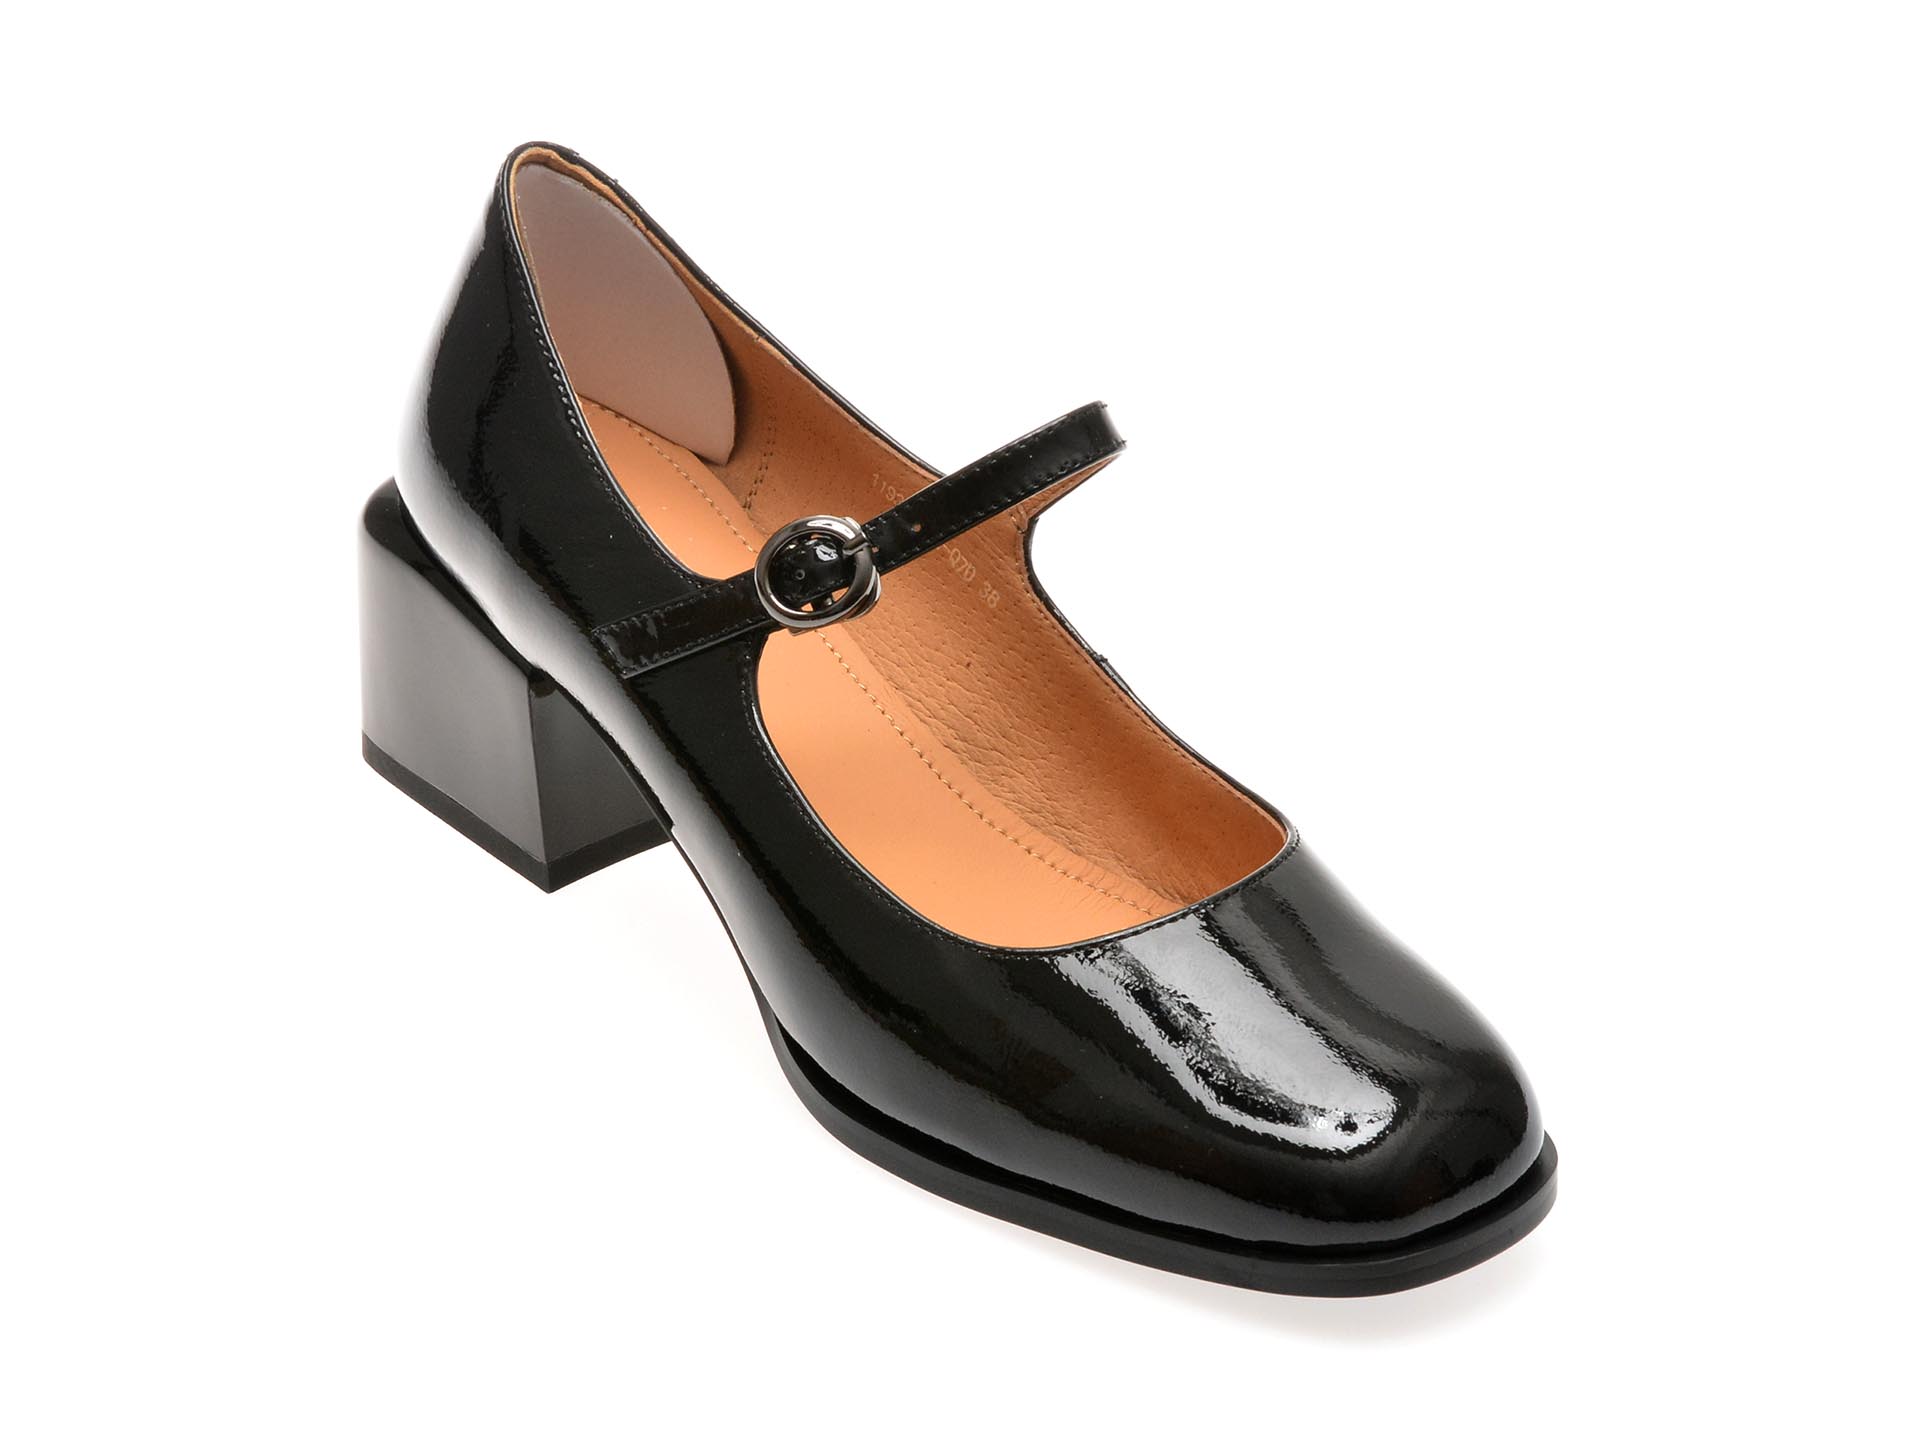 Pantofi casual FLAVIA PASSINI negri, 1193, din piele naturala lacuita